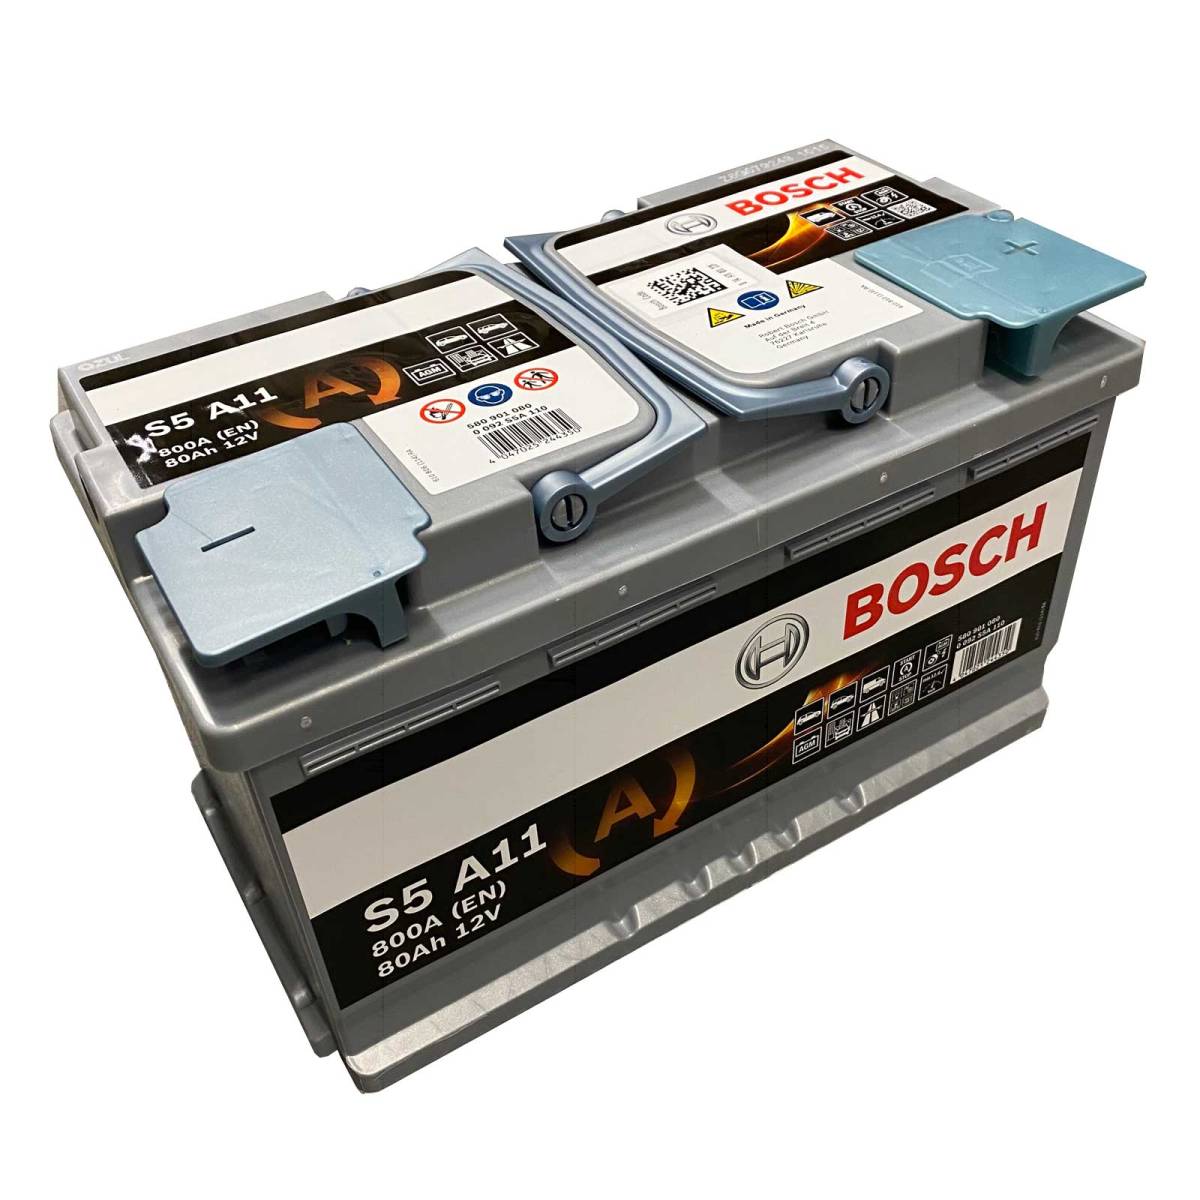 Bosch S5 A11 car battery AGM Start-Stop 580 901 080 12V 80 Ah 800A